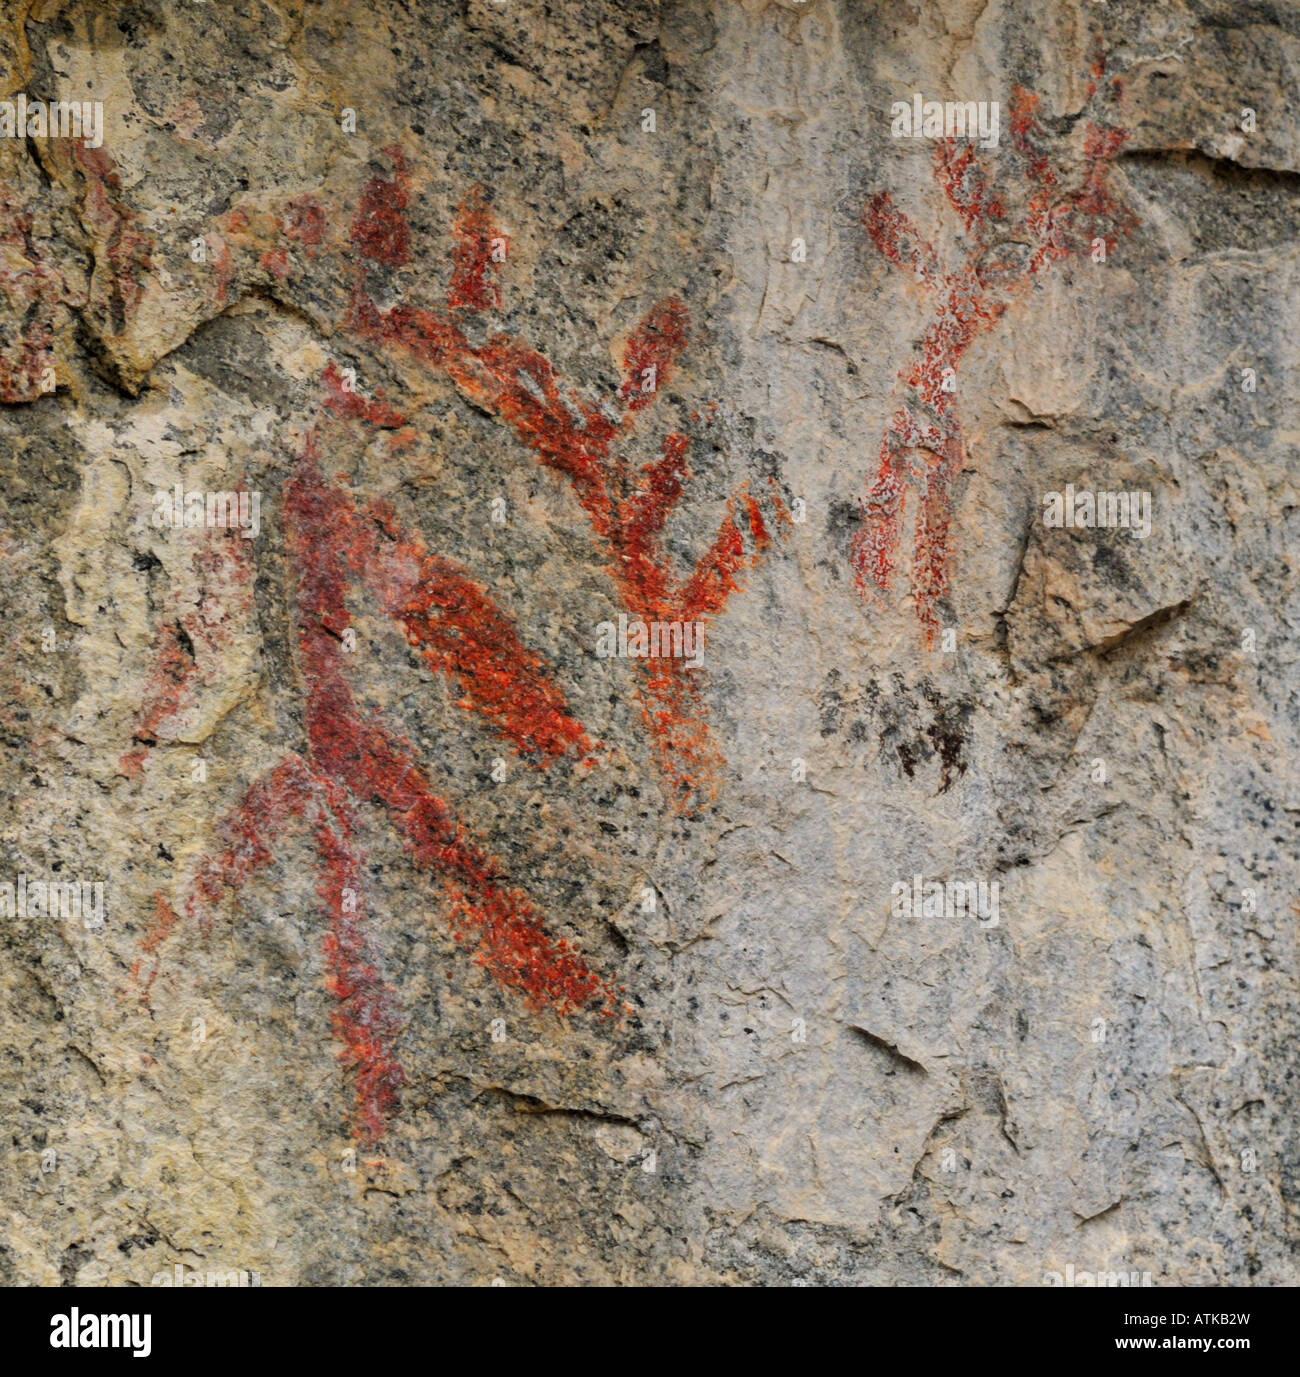 Le pictogramme (ancient art rupestre aborigène), près de Penticton, Colombie-Britannique, Canada Banque D'Images